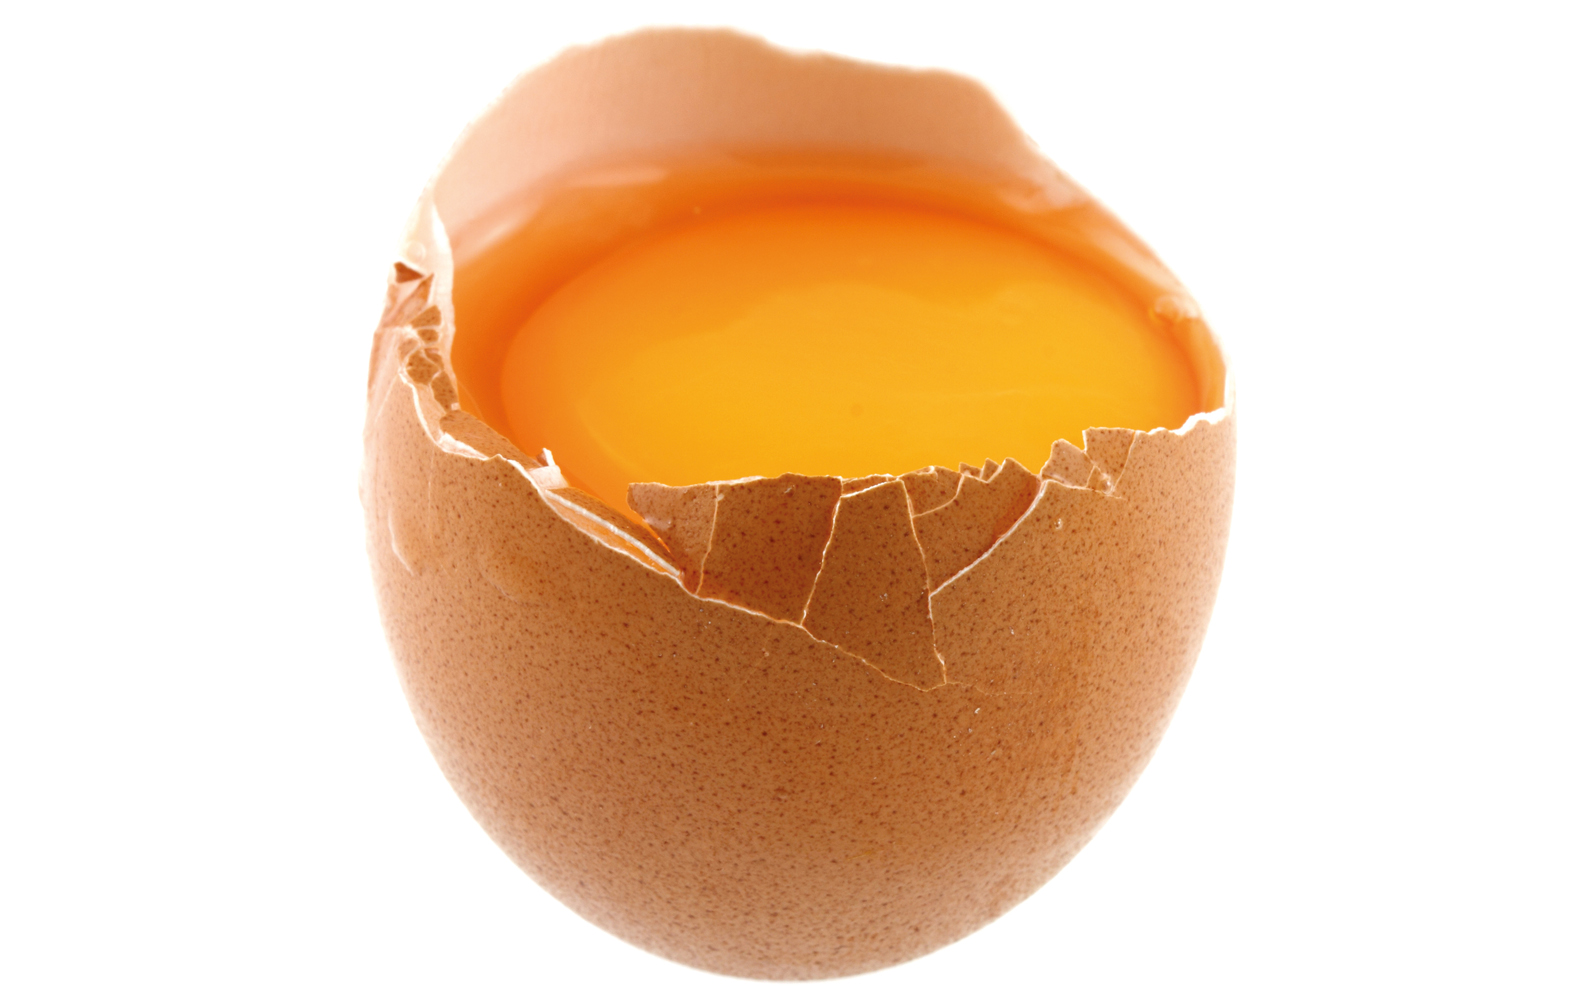 Les délices de l'œuf : exquises protéines